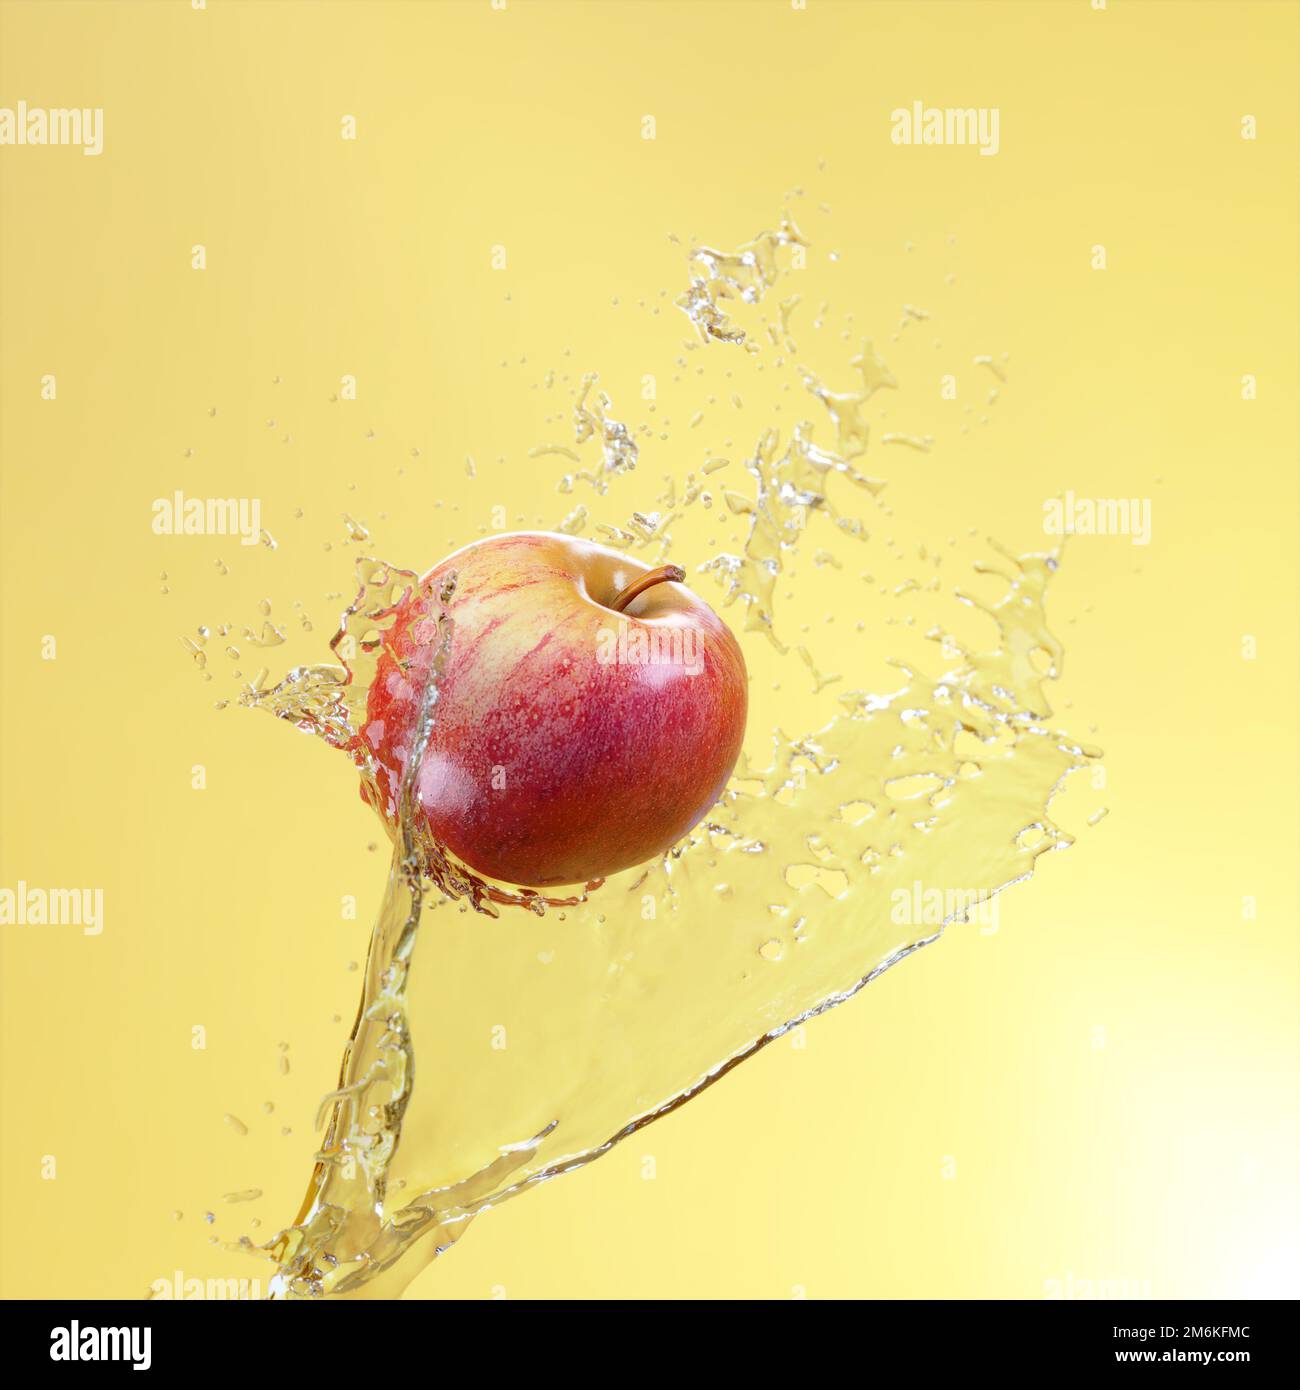 Ein saftiger und reifer Apfel, der in einem Fluss aus Spritzwasser auf gelbem Hintergrund fliegt. Werbeplakat. 3D-Rendering Stockfoto